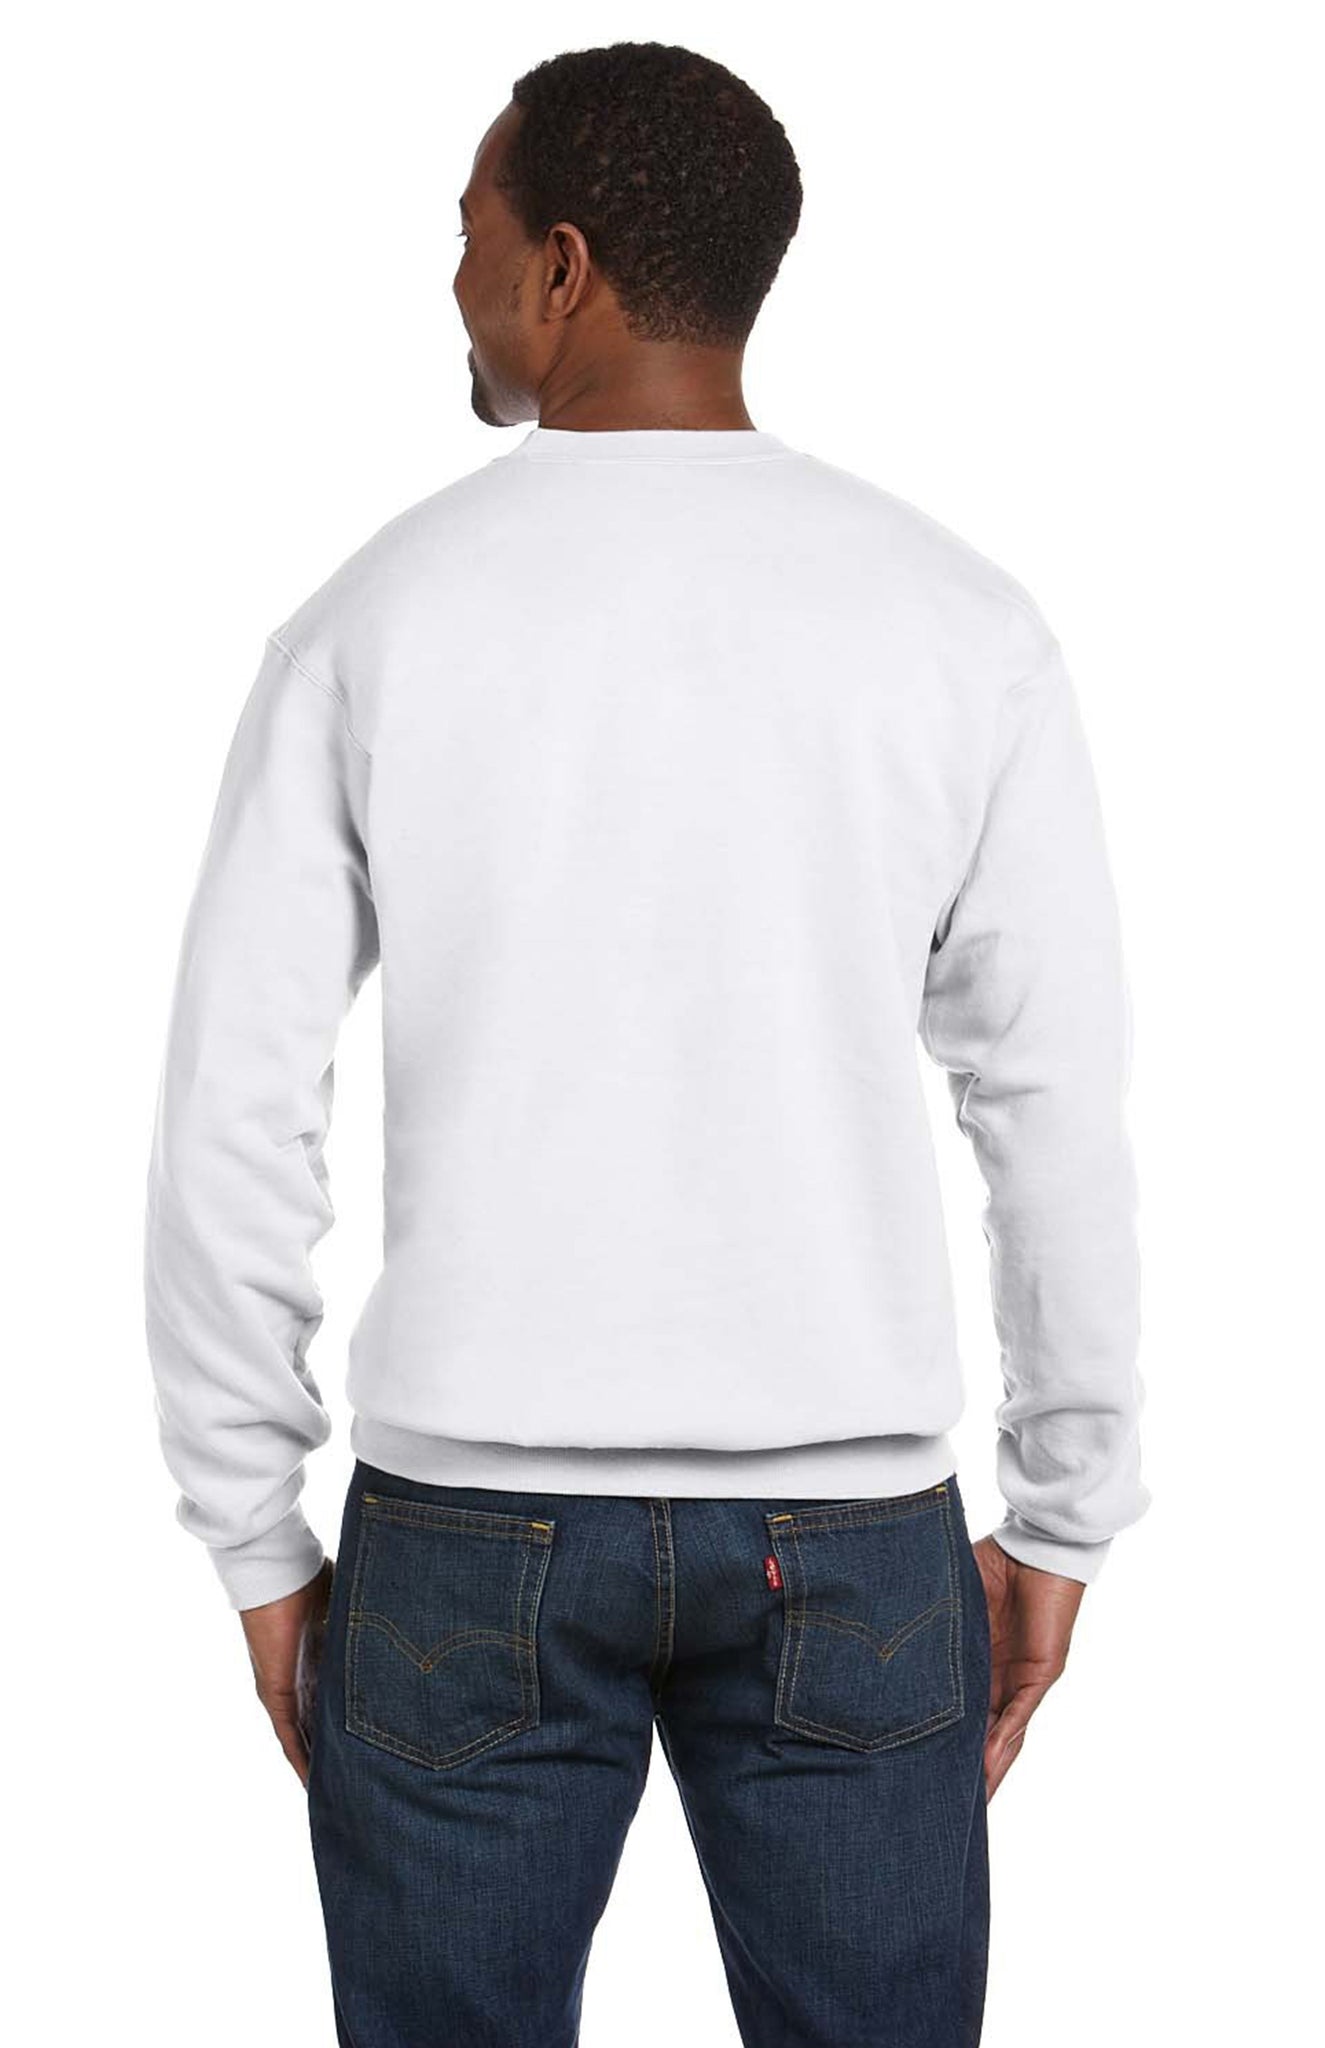 Colorado Curve Unisex Sweatshirt